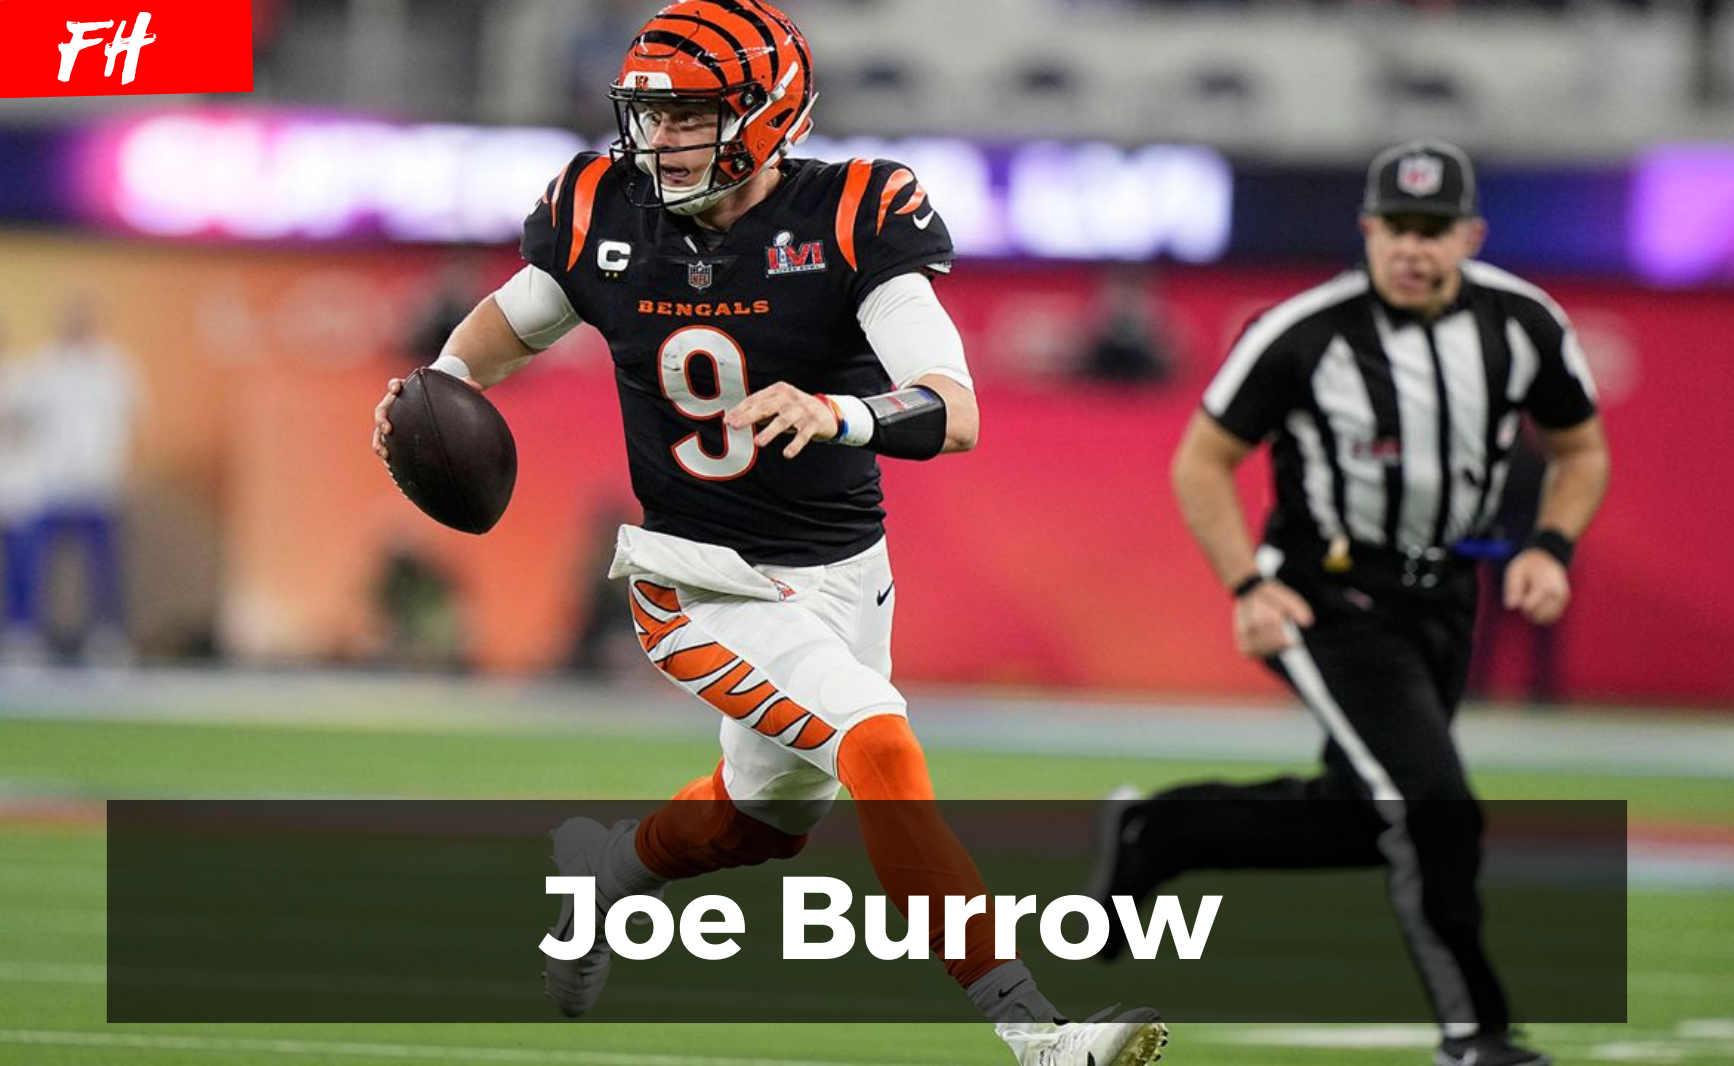  Joe Burrow